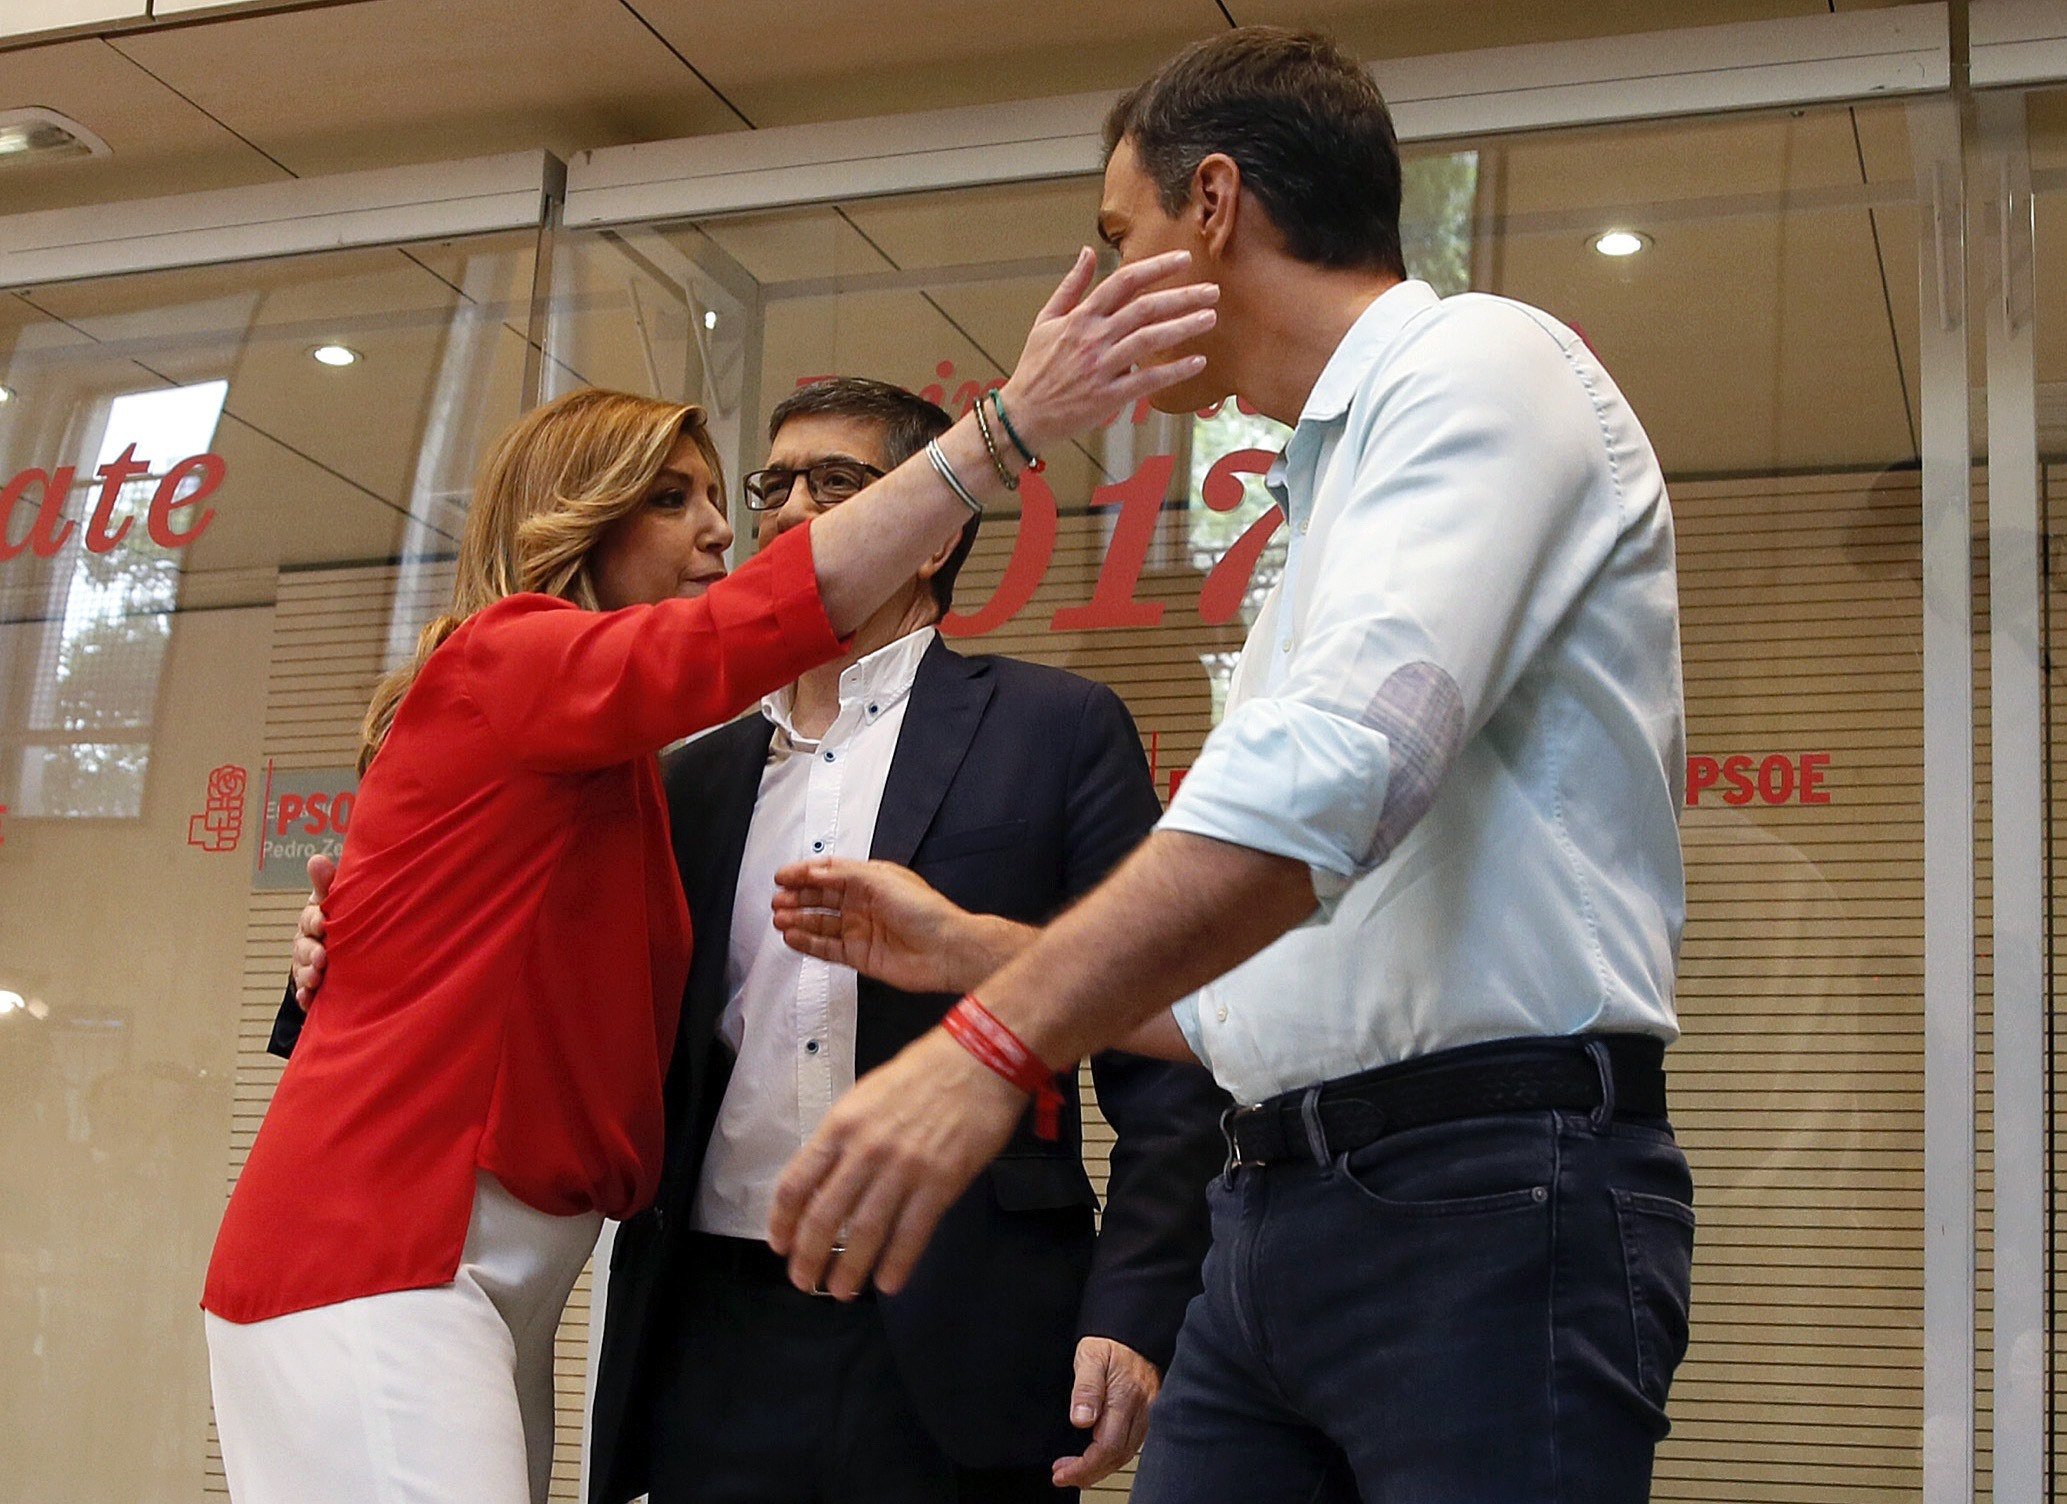 El debat del PSOE a Twitter: entre el "no menteixis carinyo" i el "malaltet"